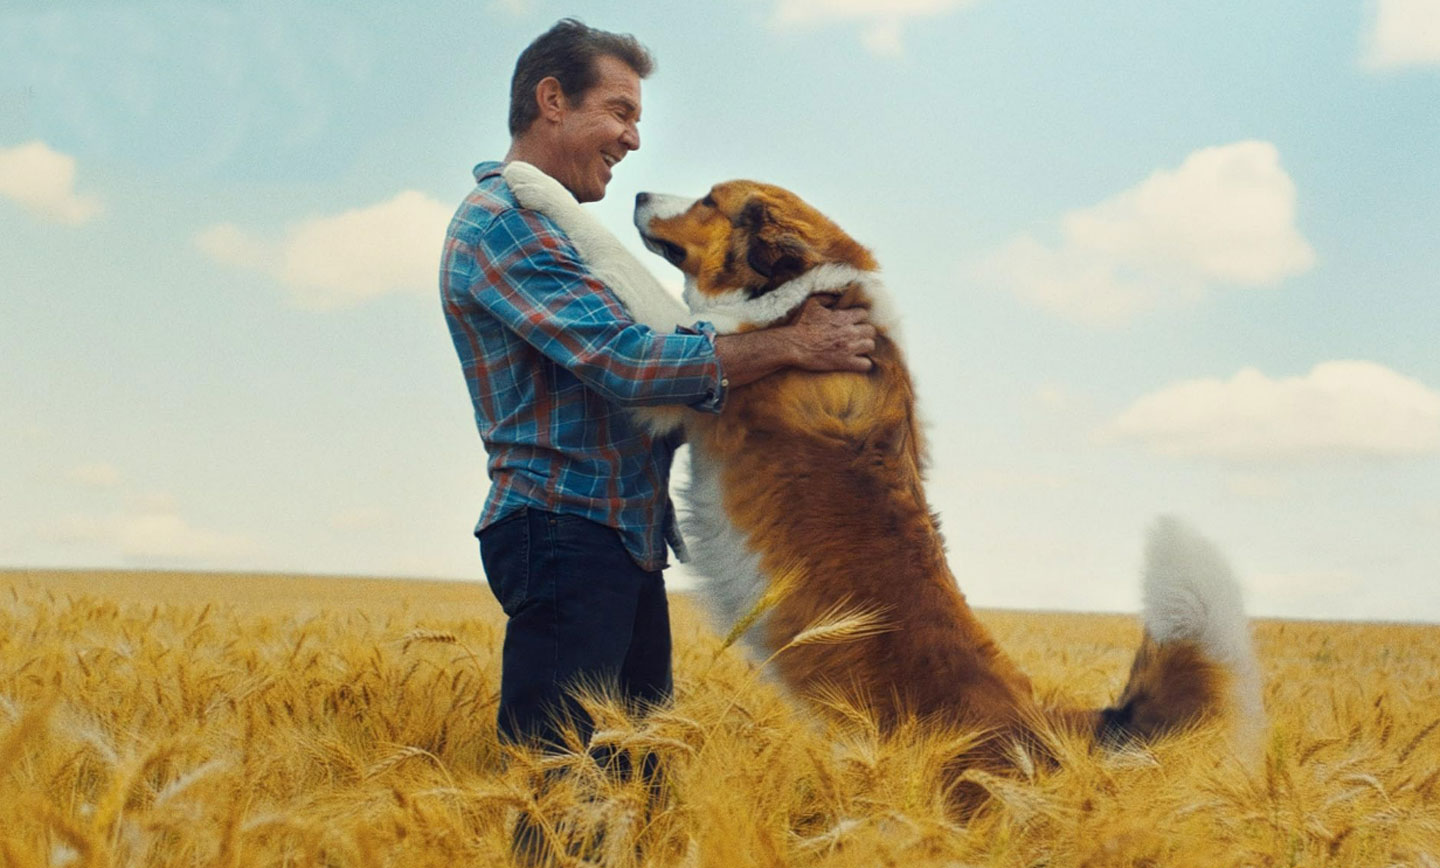 سفر یک سگ داستانی خانوادگی جذاب و احساسی است که نشان می‌دهد حیوانات خانگی چه نقشی مهمی در زندگی انسان‌ها می‌توانند داشته باشند